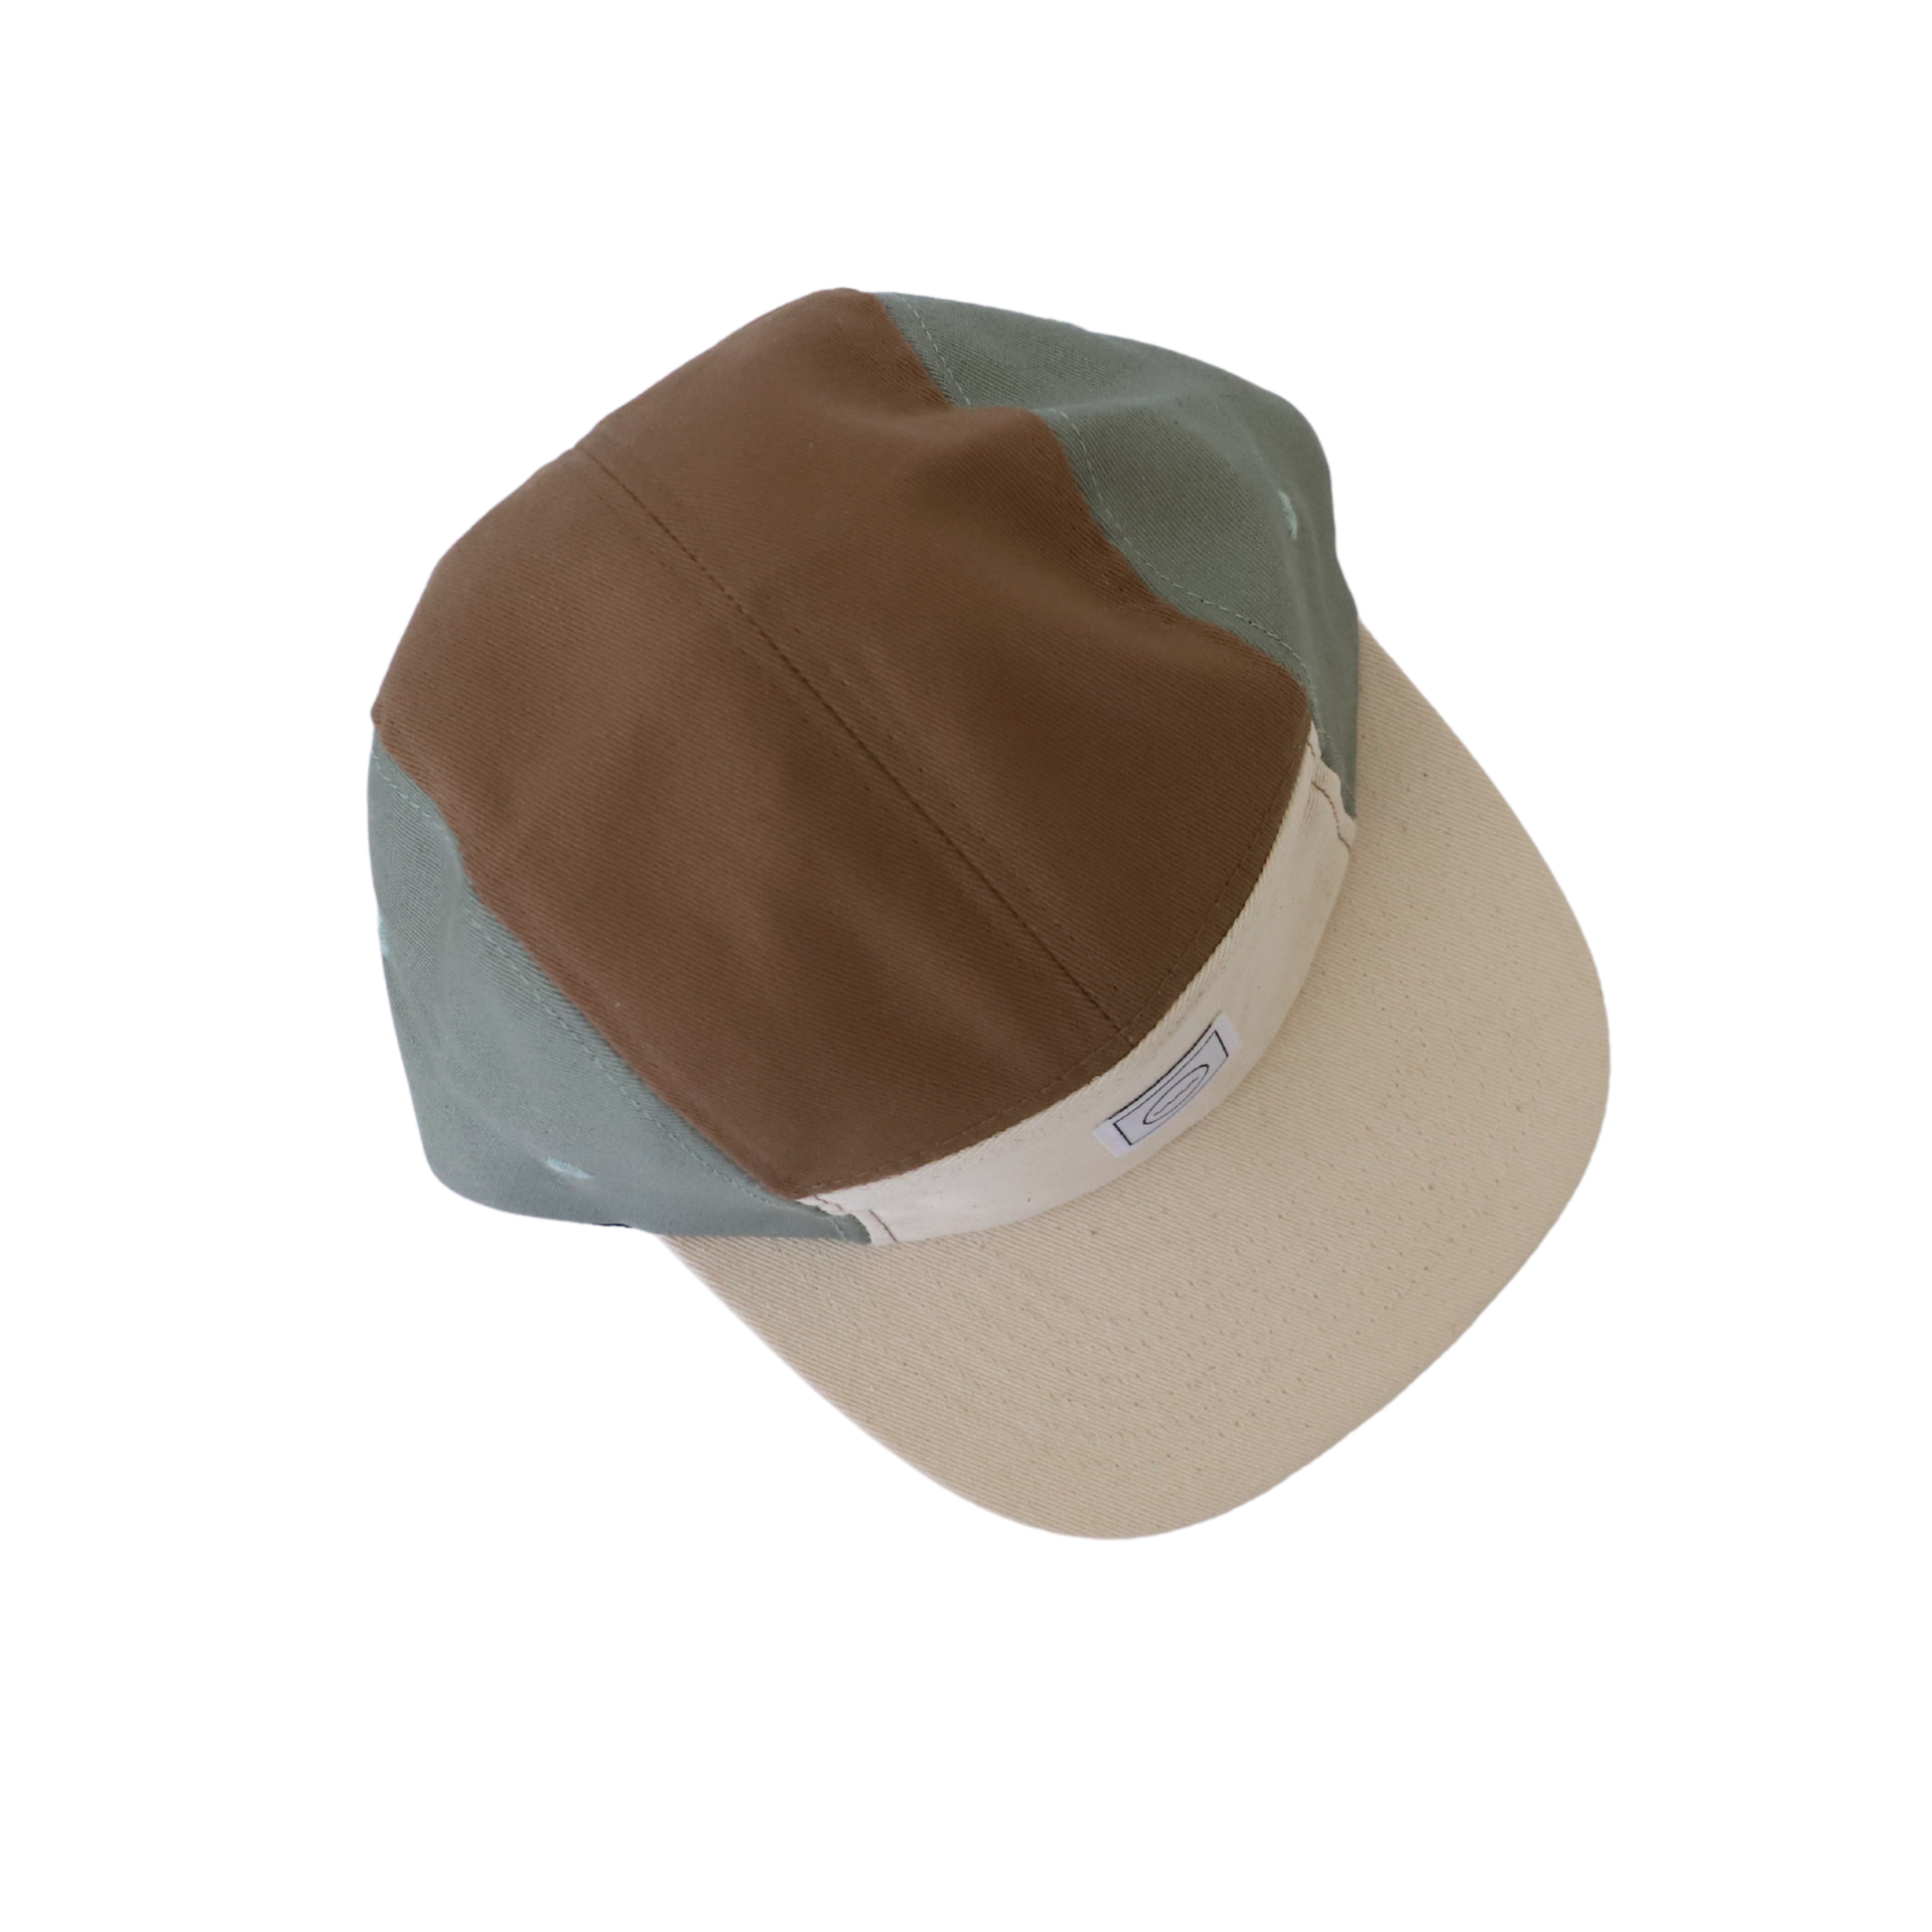 Rad River Co. Cotton Five-Panel Hat in Coastline Size 2